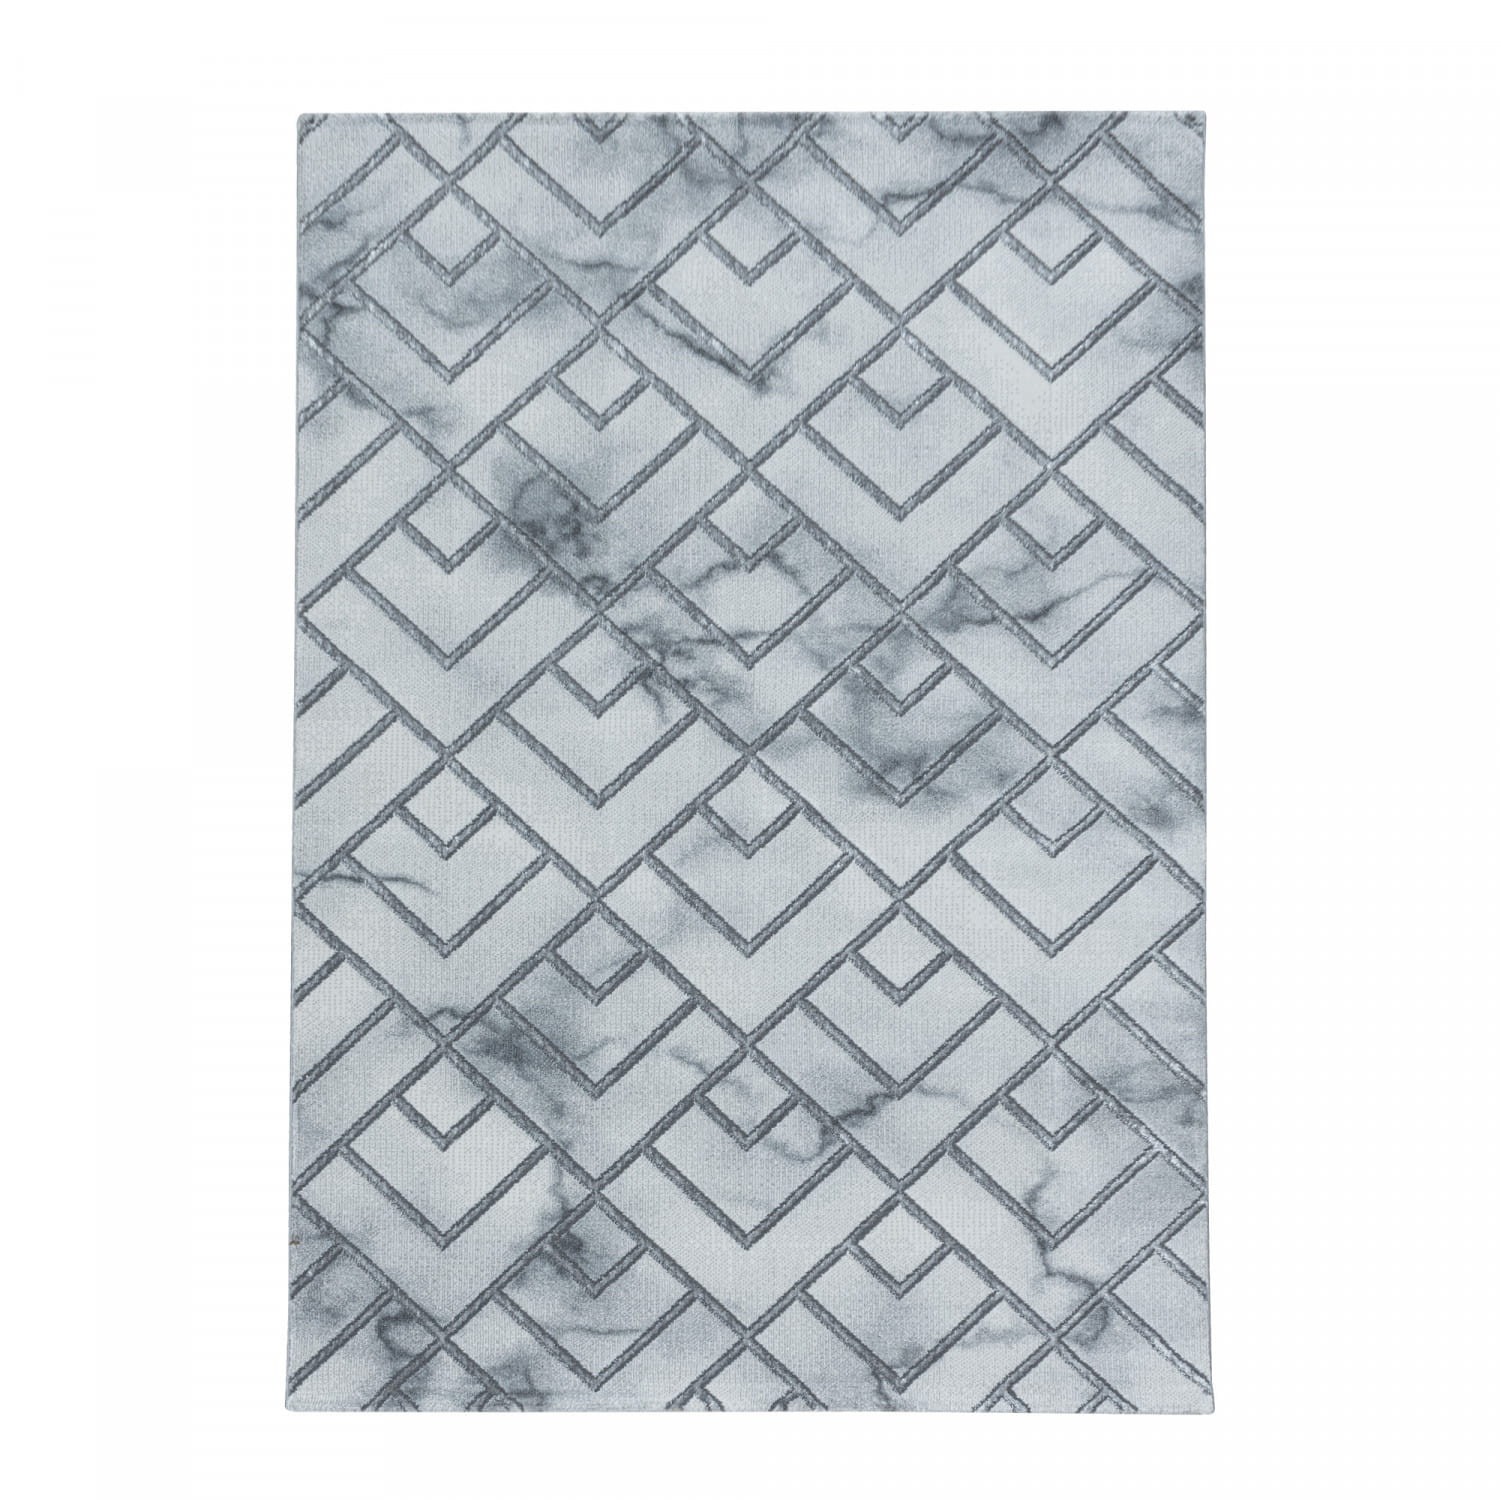 Koberec Naxos mozaika sivý